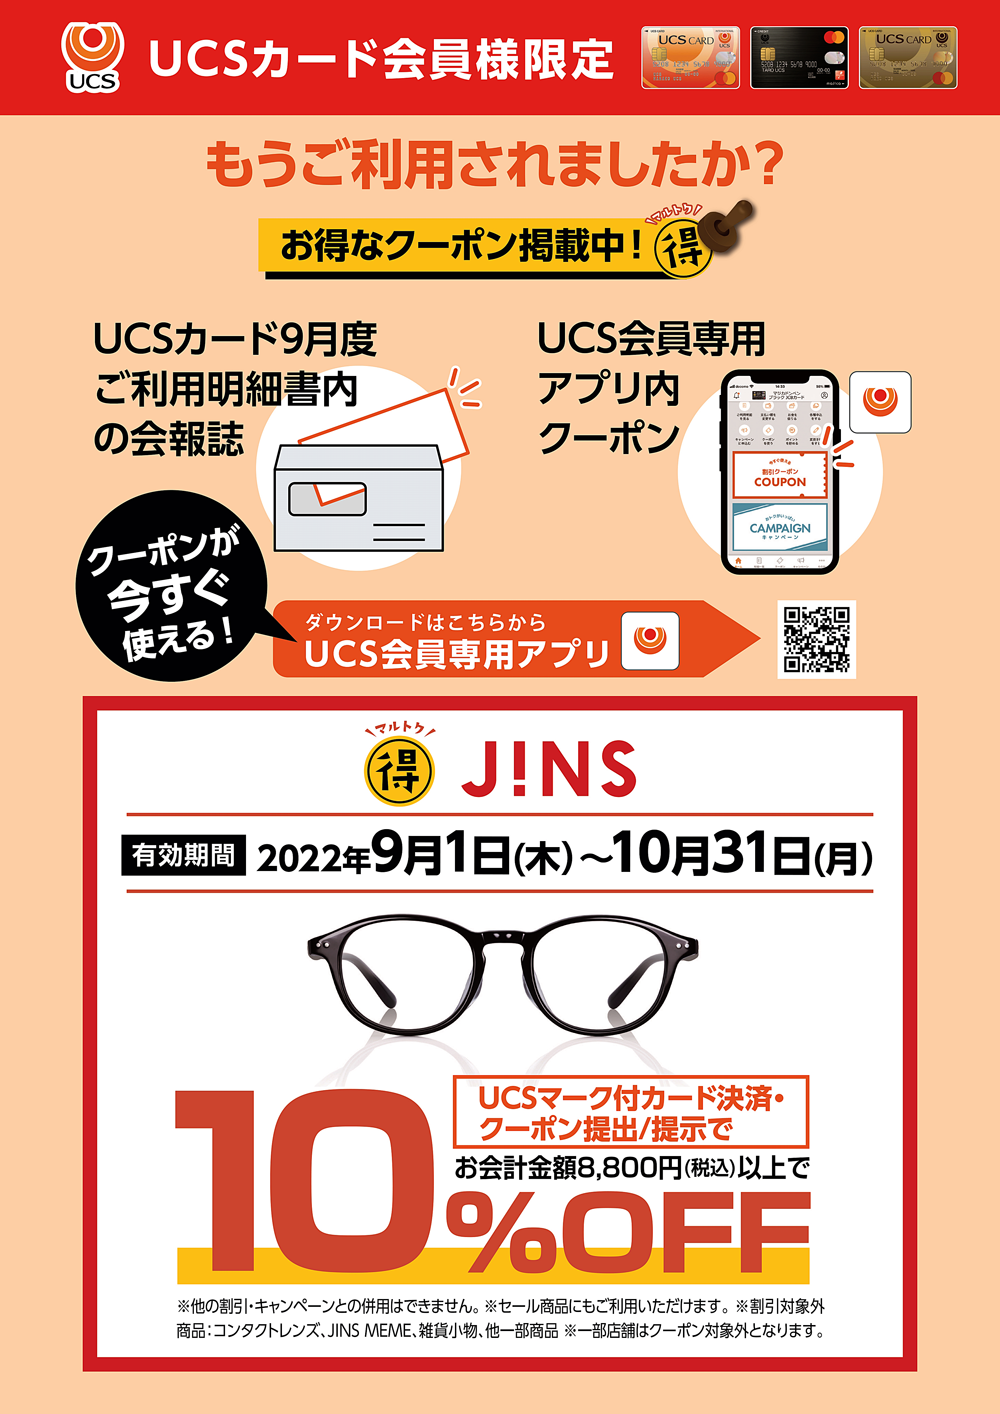 UCSカード会員様限定【JINS】クーポンイメージ画像